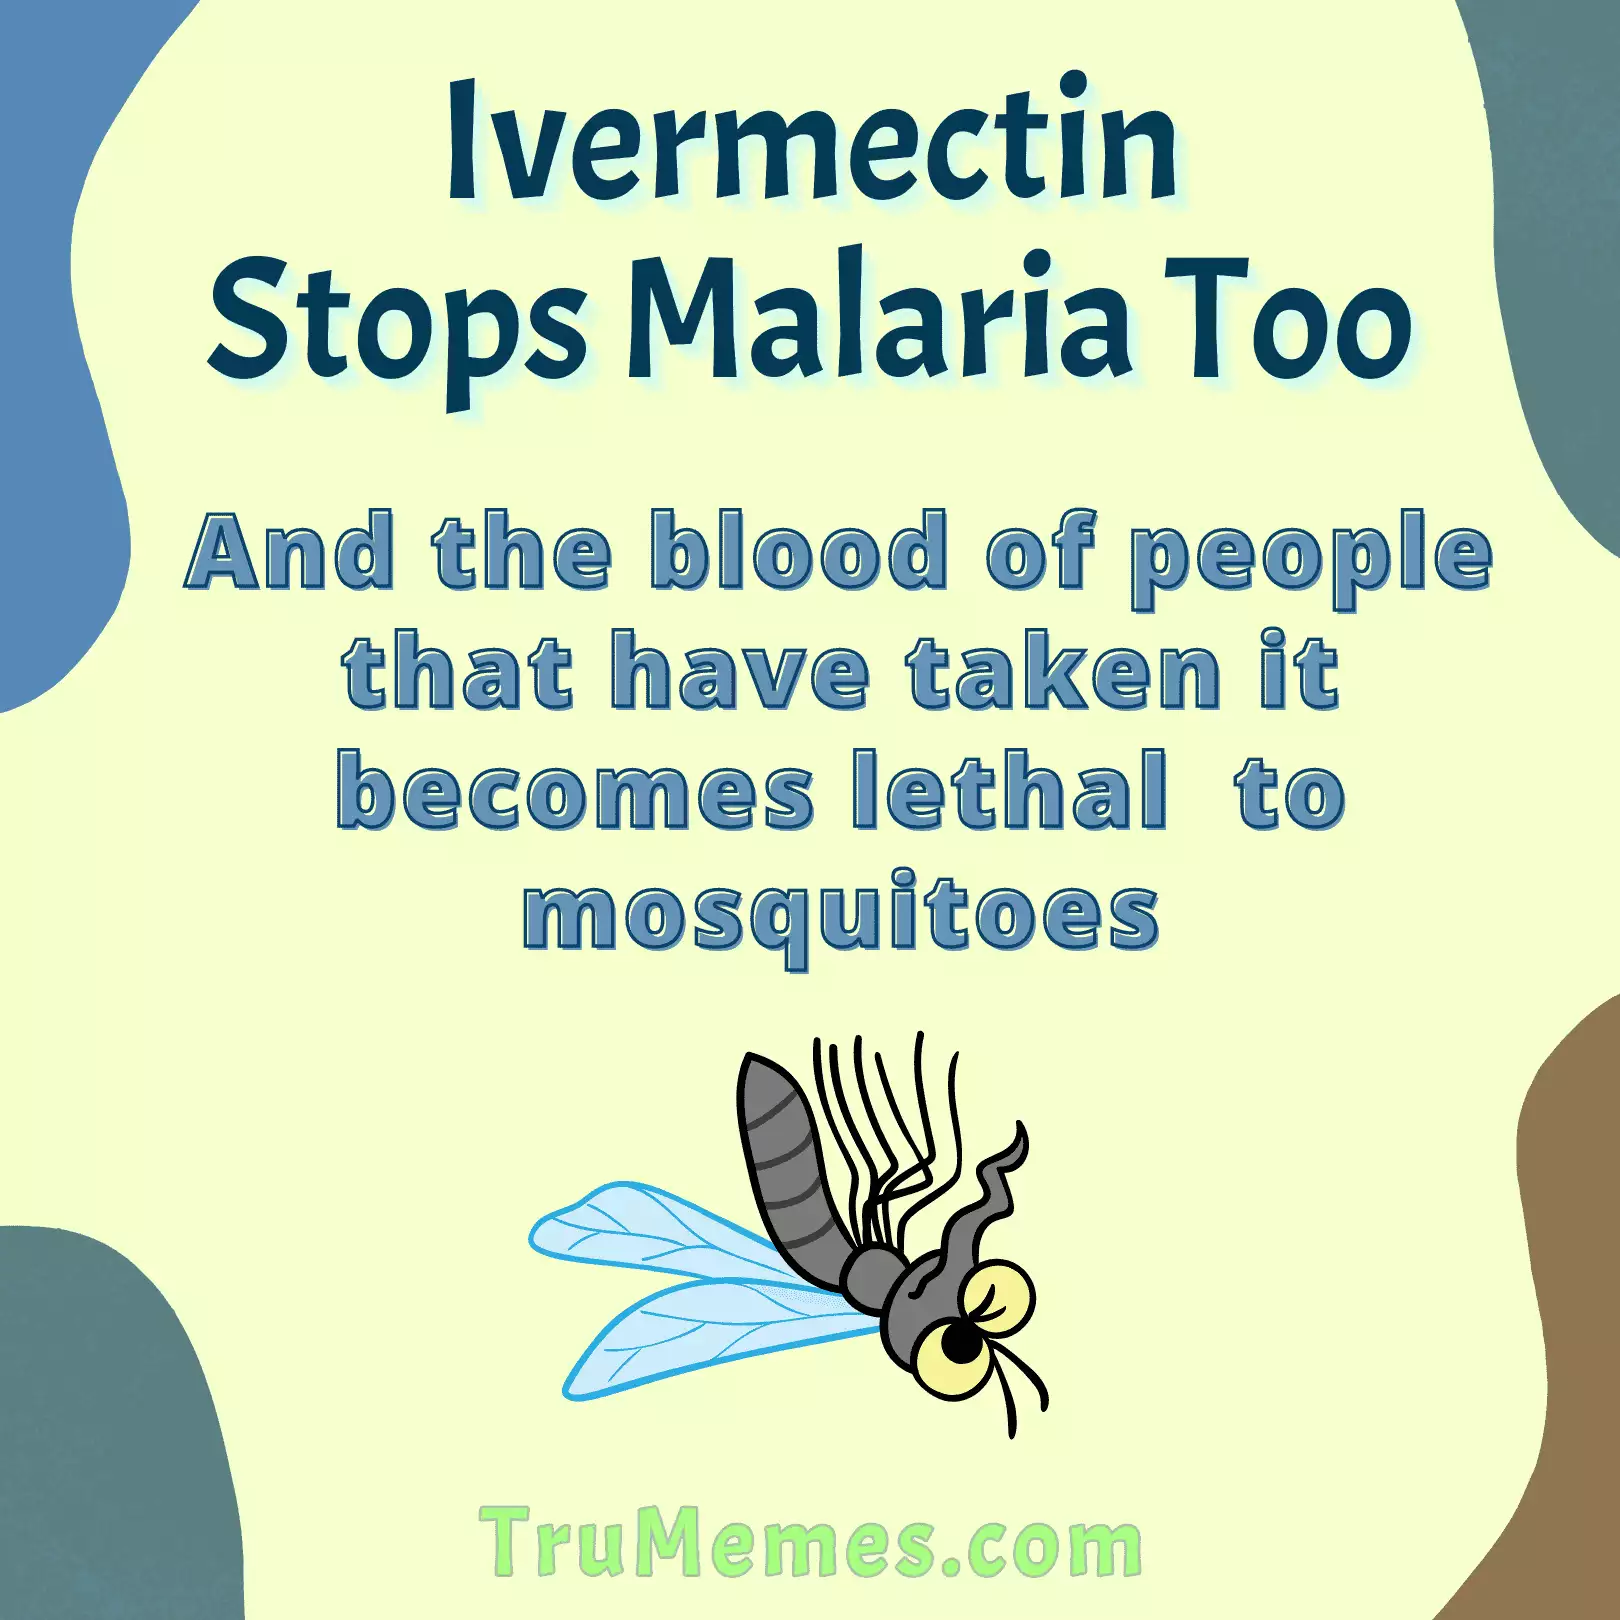 Ivermectin Kills Malaria Too